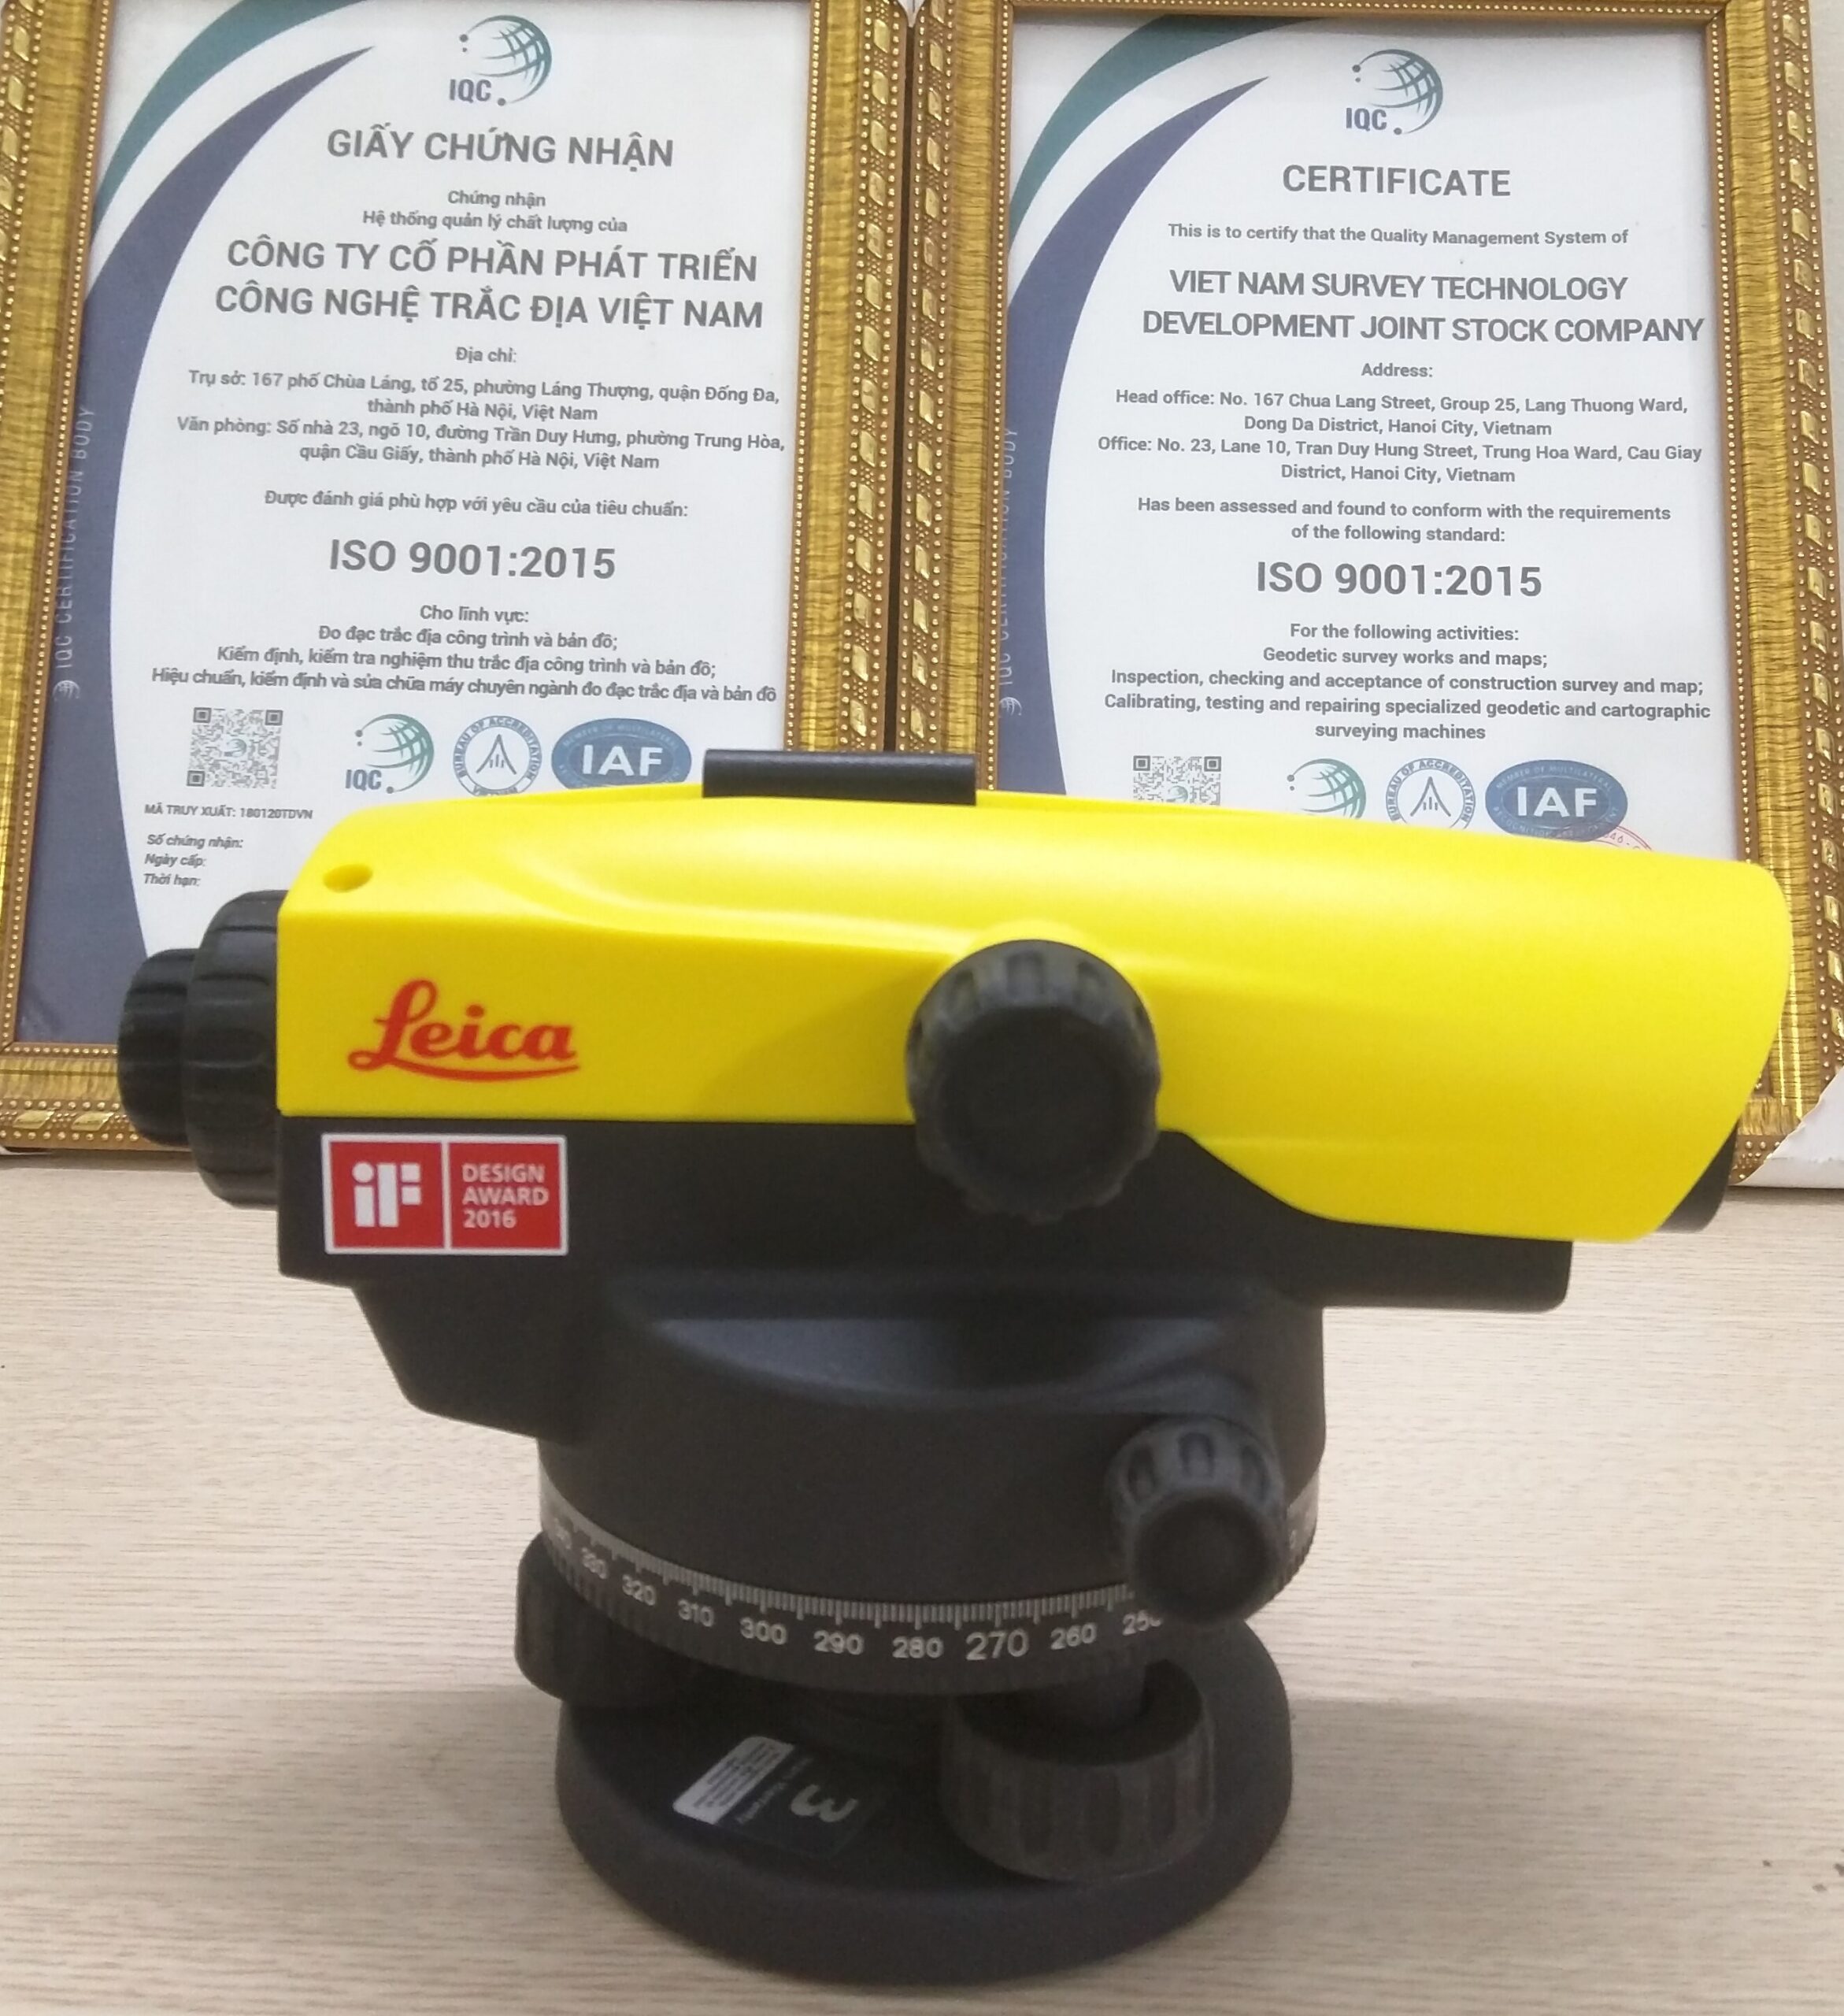 Máy Thủy Bình Leica NA532: Máy Thủy Bình Leica NA532 là một trong những sản phẩm được ưa chuộng nhất trong lĩnh vực đo đạc và xây dựng. Với tính năng nổi bật như khả năng đo chính xác cao, hỗ trợ đo chiều dài và độ cao, máy Thủy Bình Leica NA532 đang trở thành lựa chọn hàng đầu của các chuyên gia đo đạc và xây dựng tại Việt Nam.